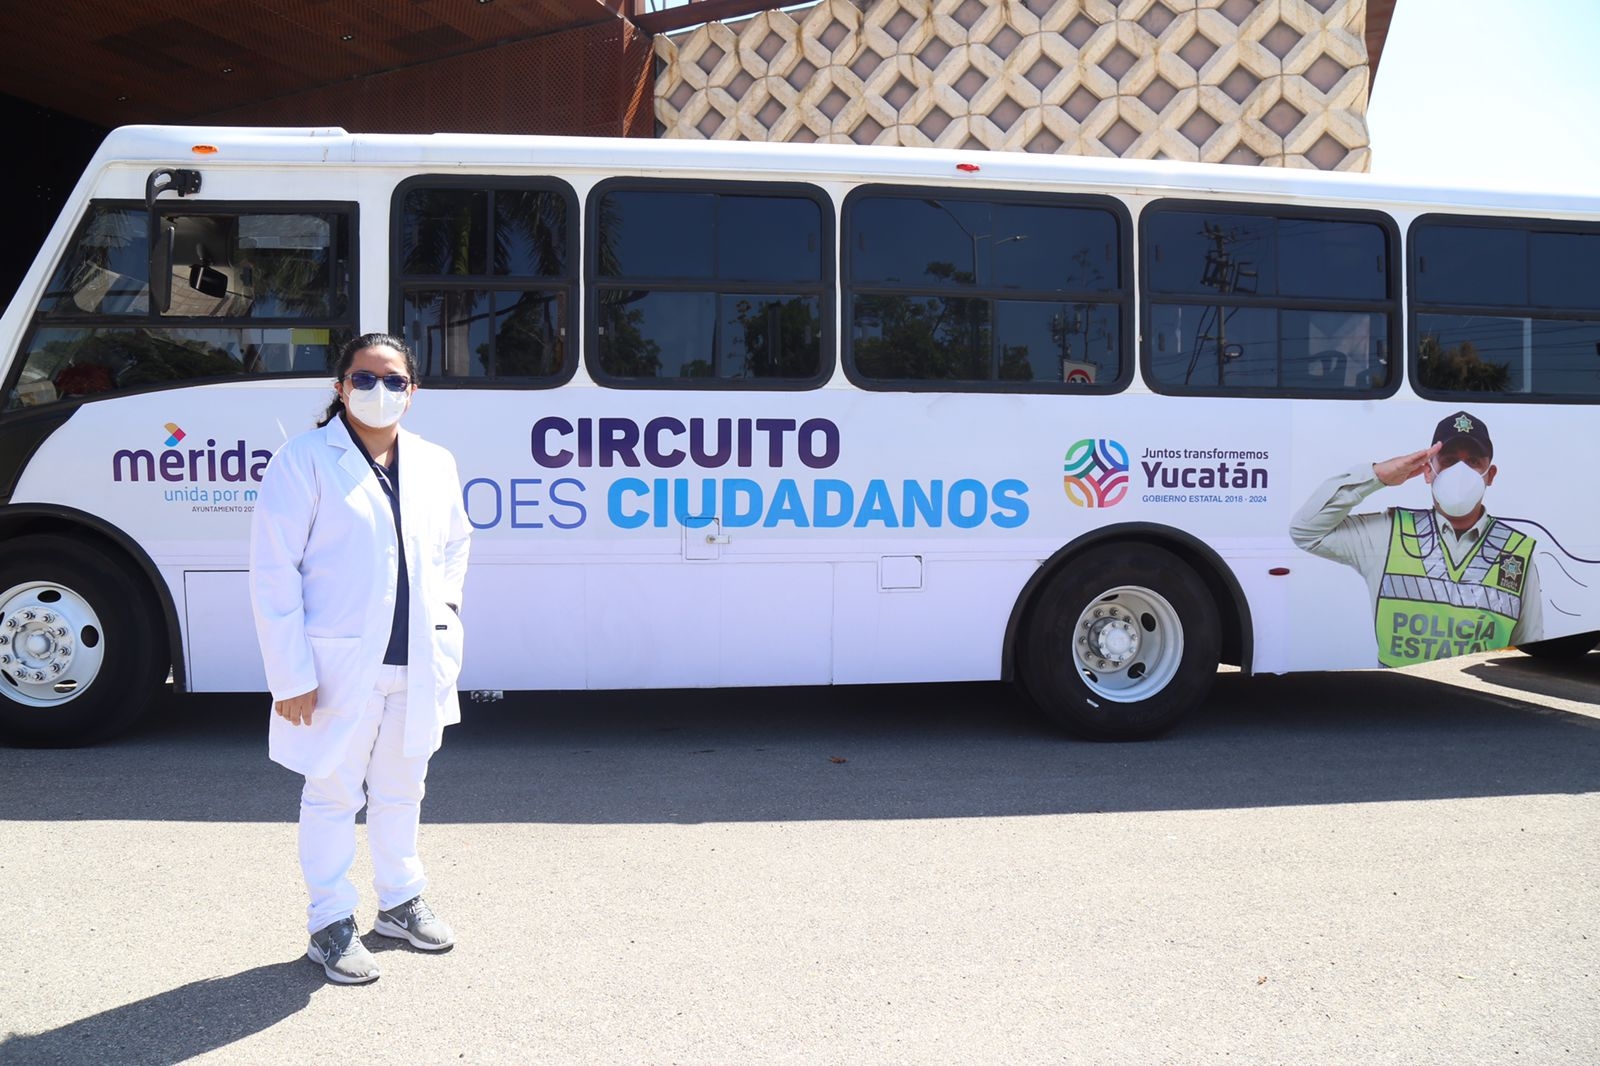 Circuito Héroes Ciudadanos en Mérida: Éstas son las rutas y horarios del servicio